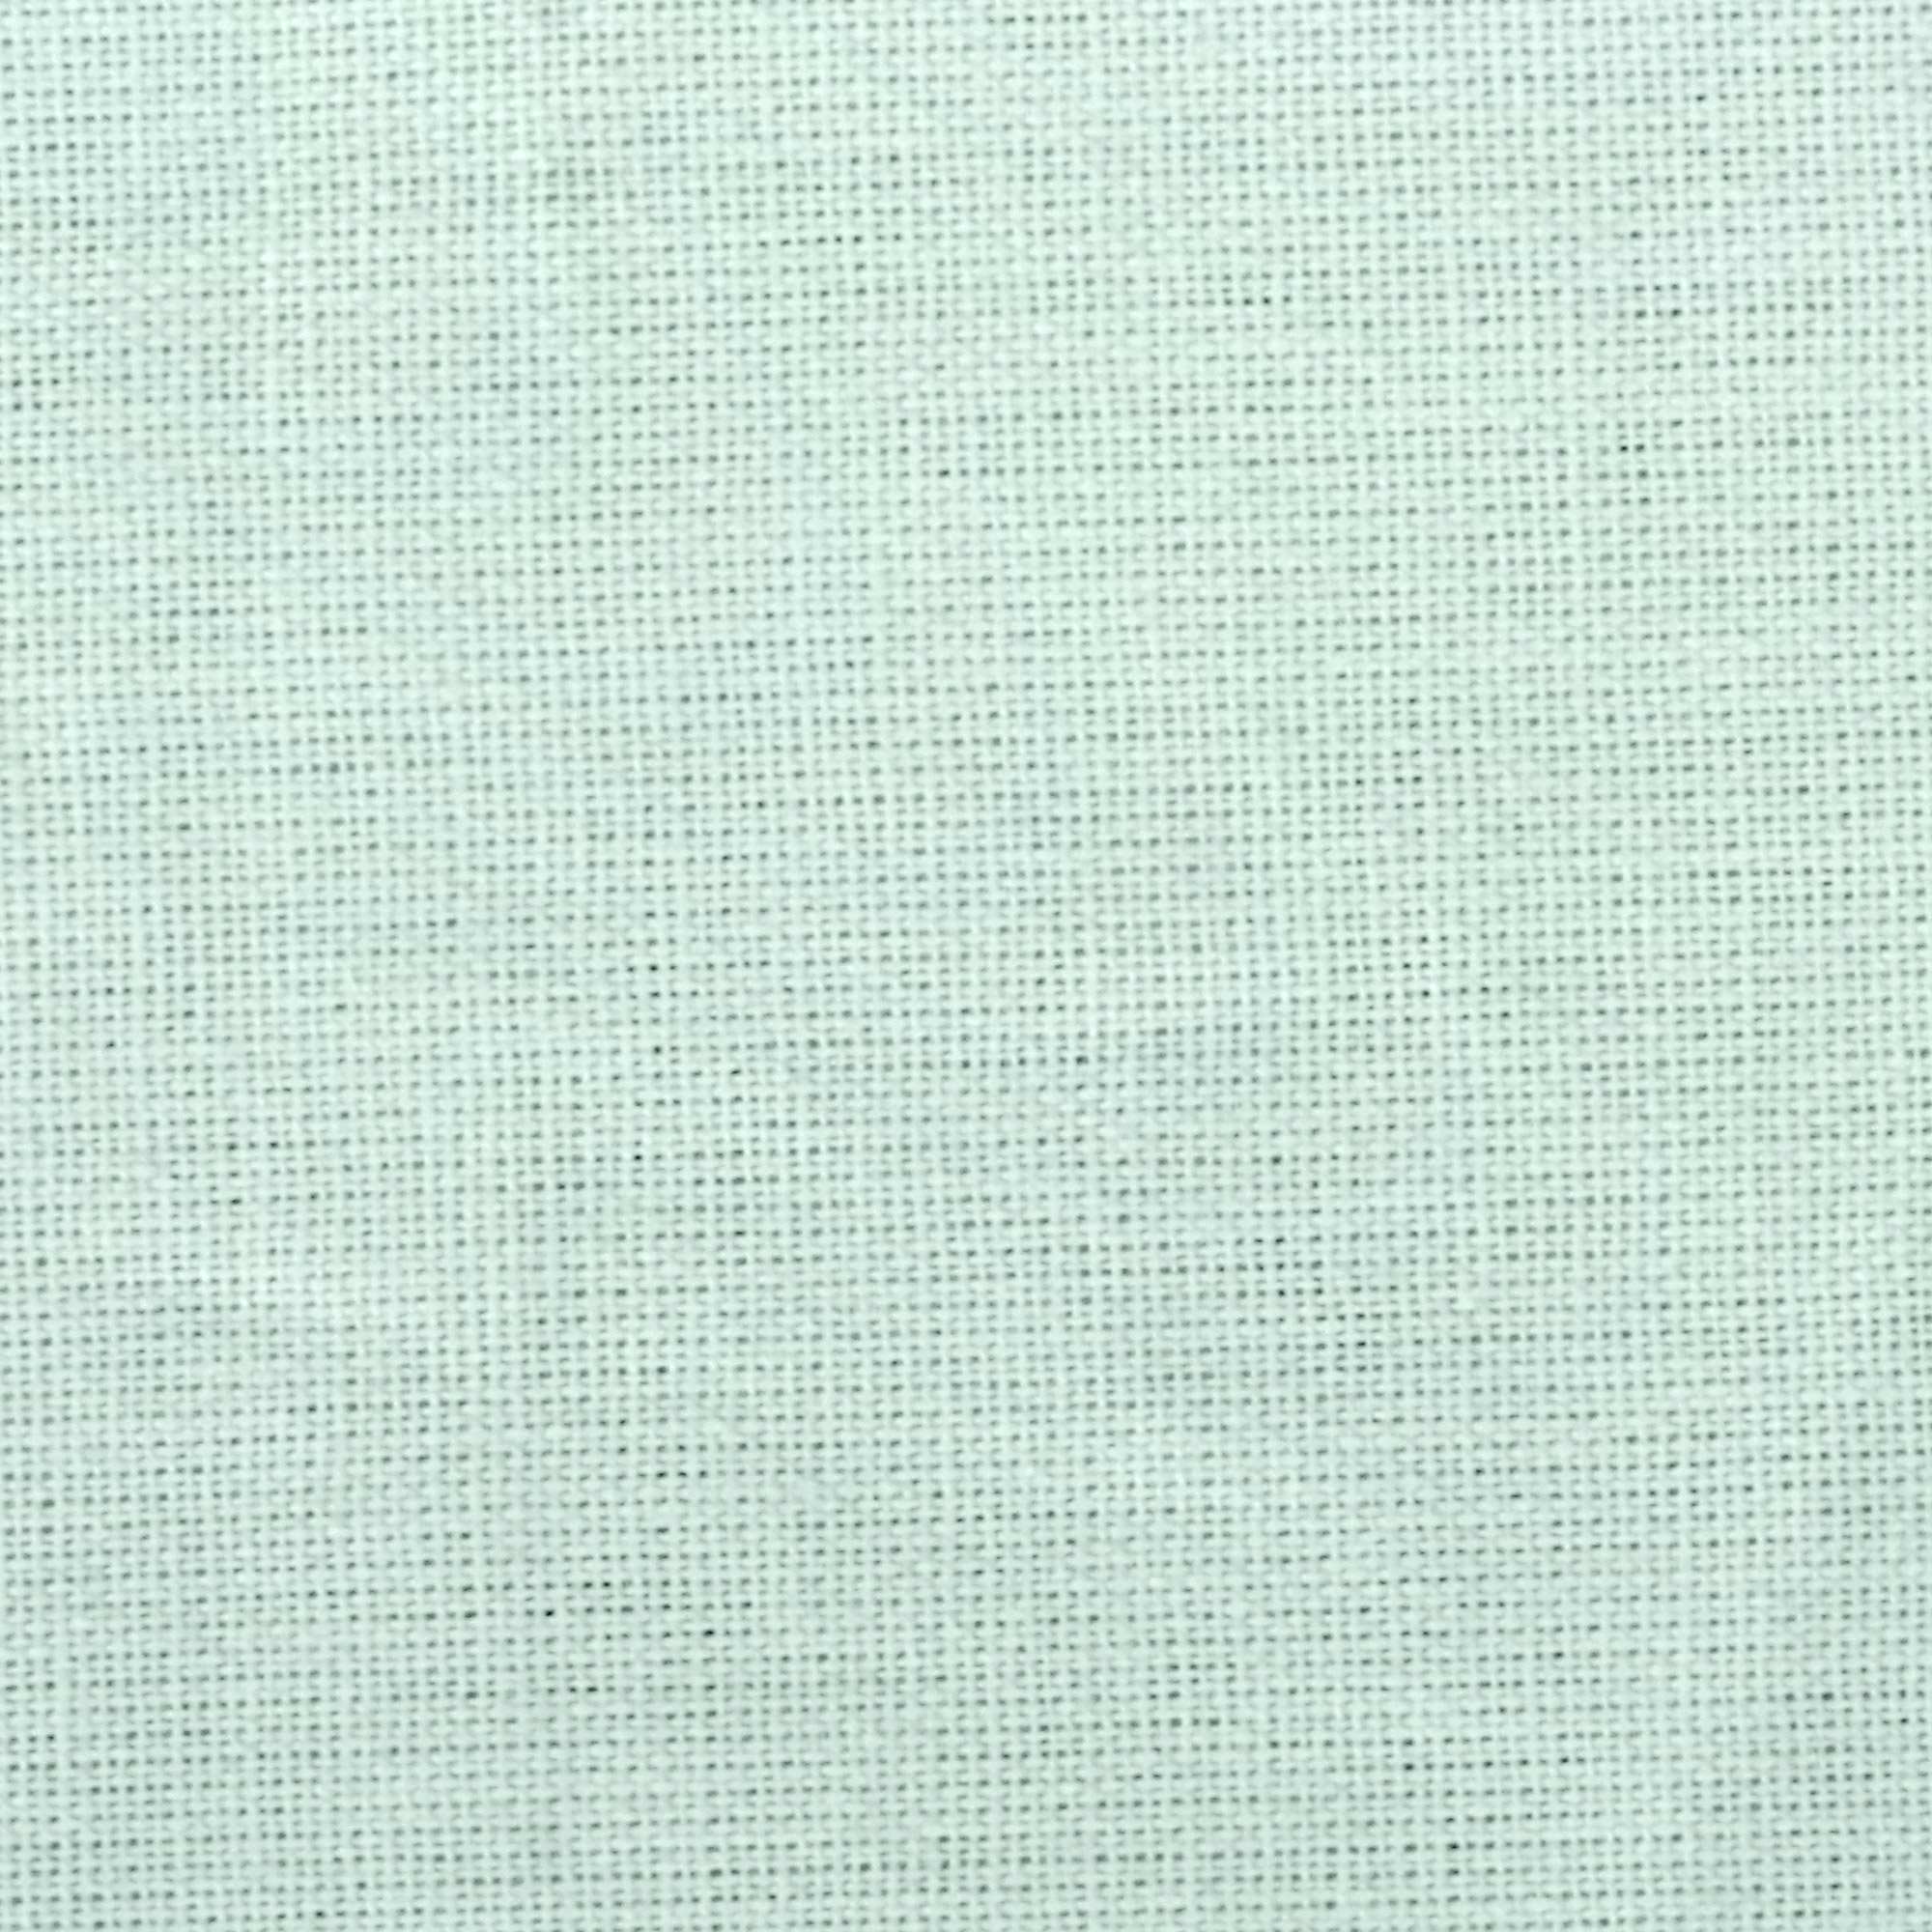 Комплект постельного белья La Besse Ранфорс мятный Кинг сайз, размер Кинг сайз - фото 4